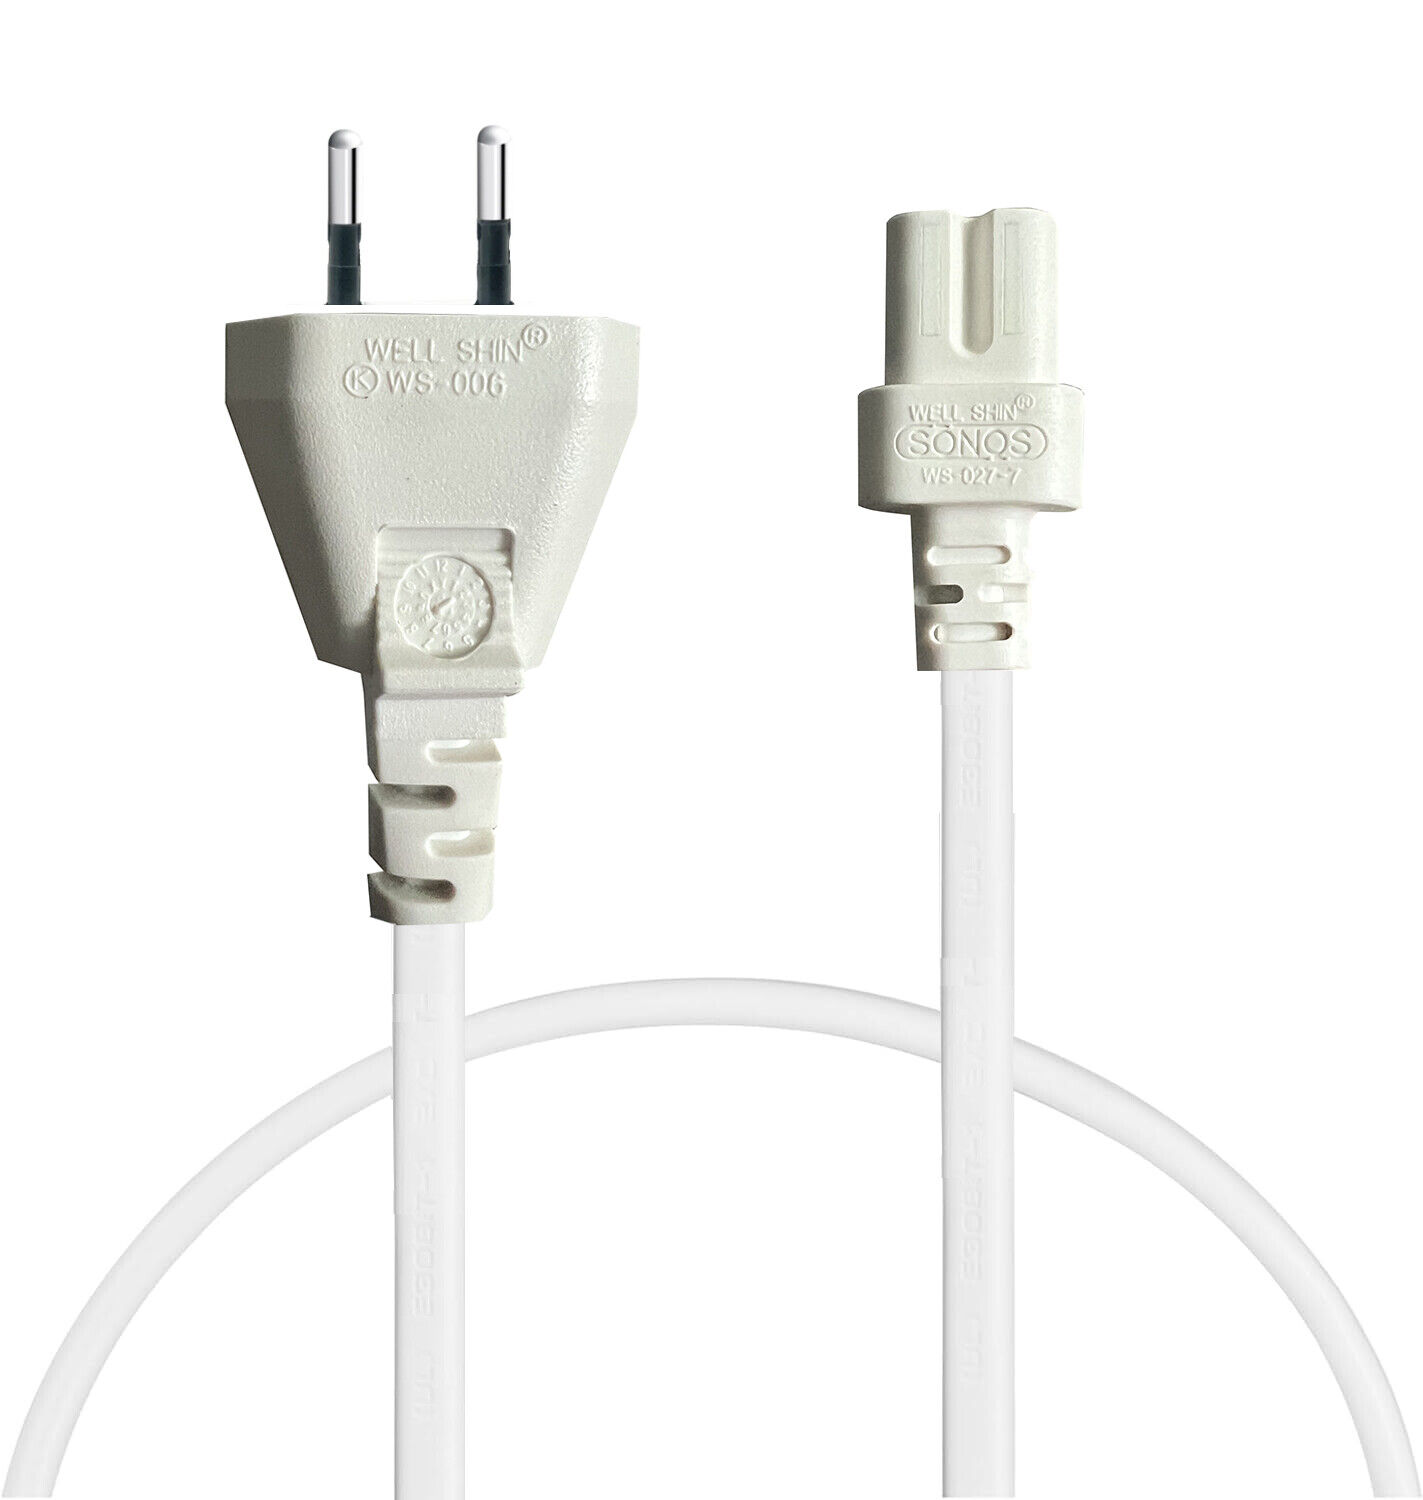 Genuine Sonos EU AC Power Cable Cord for Sonos Playbar Play 3 Sub Gen 2&Gen 1 